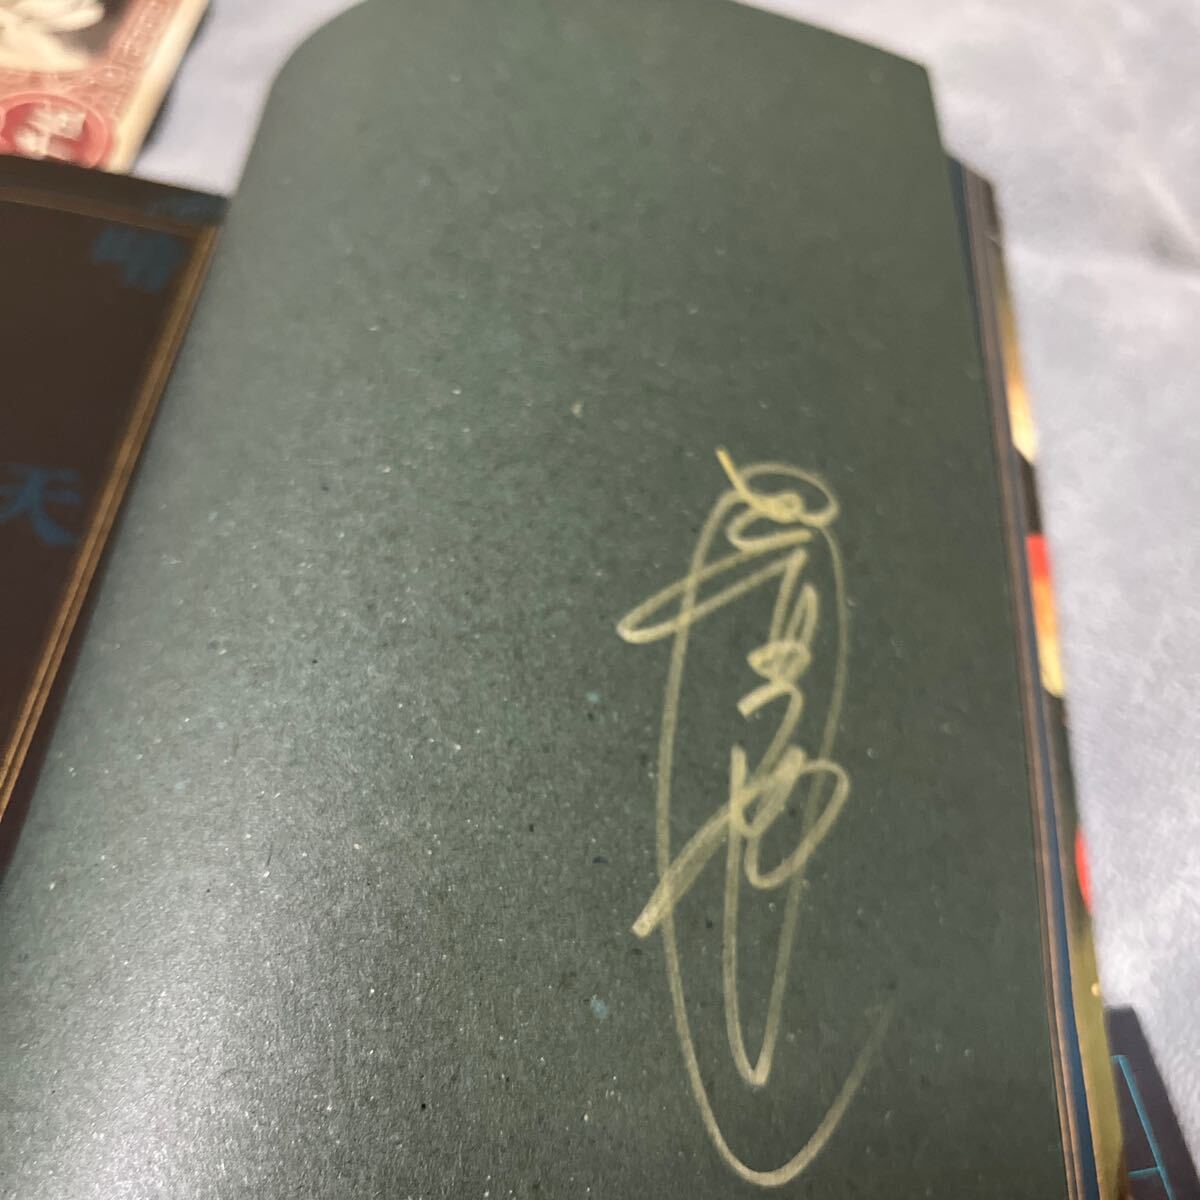 【署名本/初版/カード付き】壺也『暗天街綺想夜曲』実業之日本社 帯付き サイン本 Autographed 簽名書 Tsubonari Antengai Gensou Kirokuの画像2